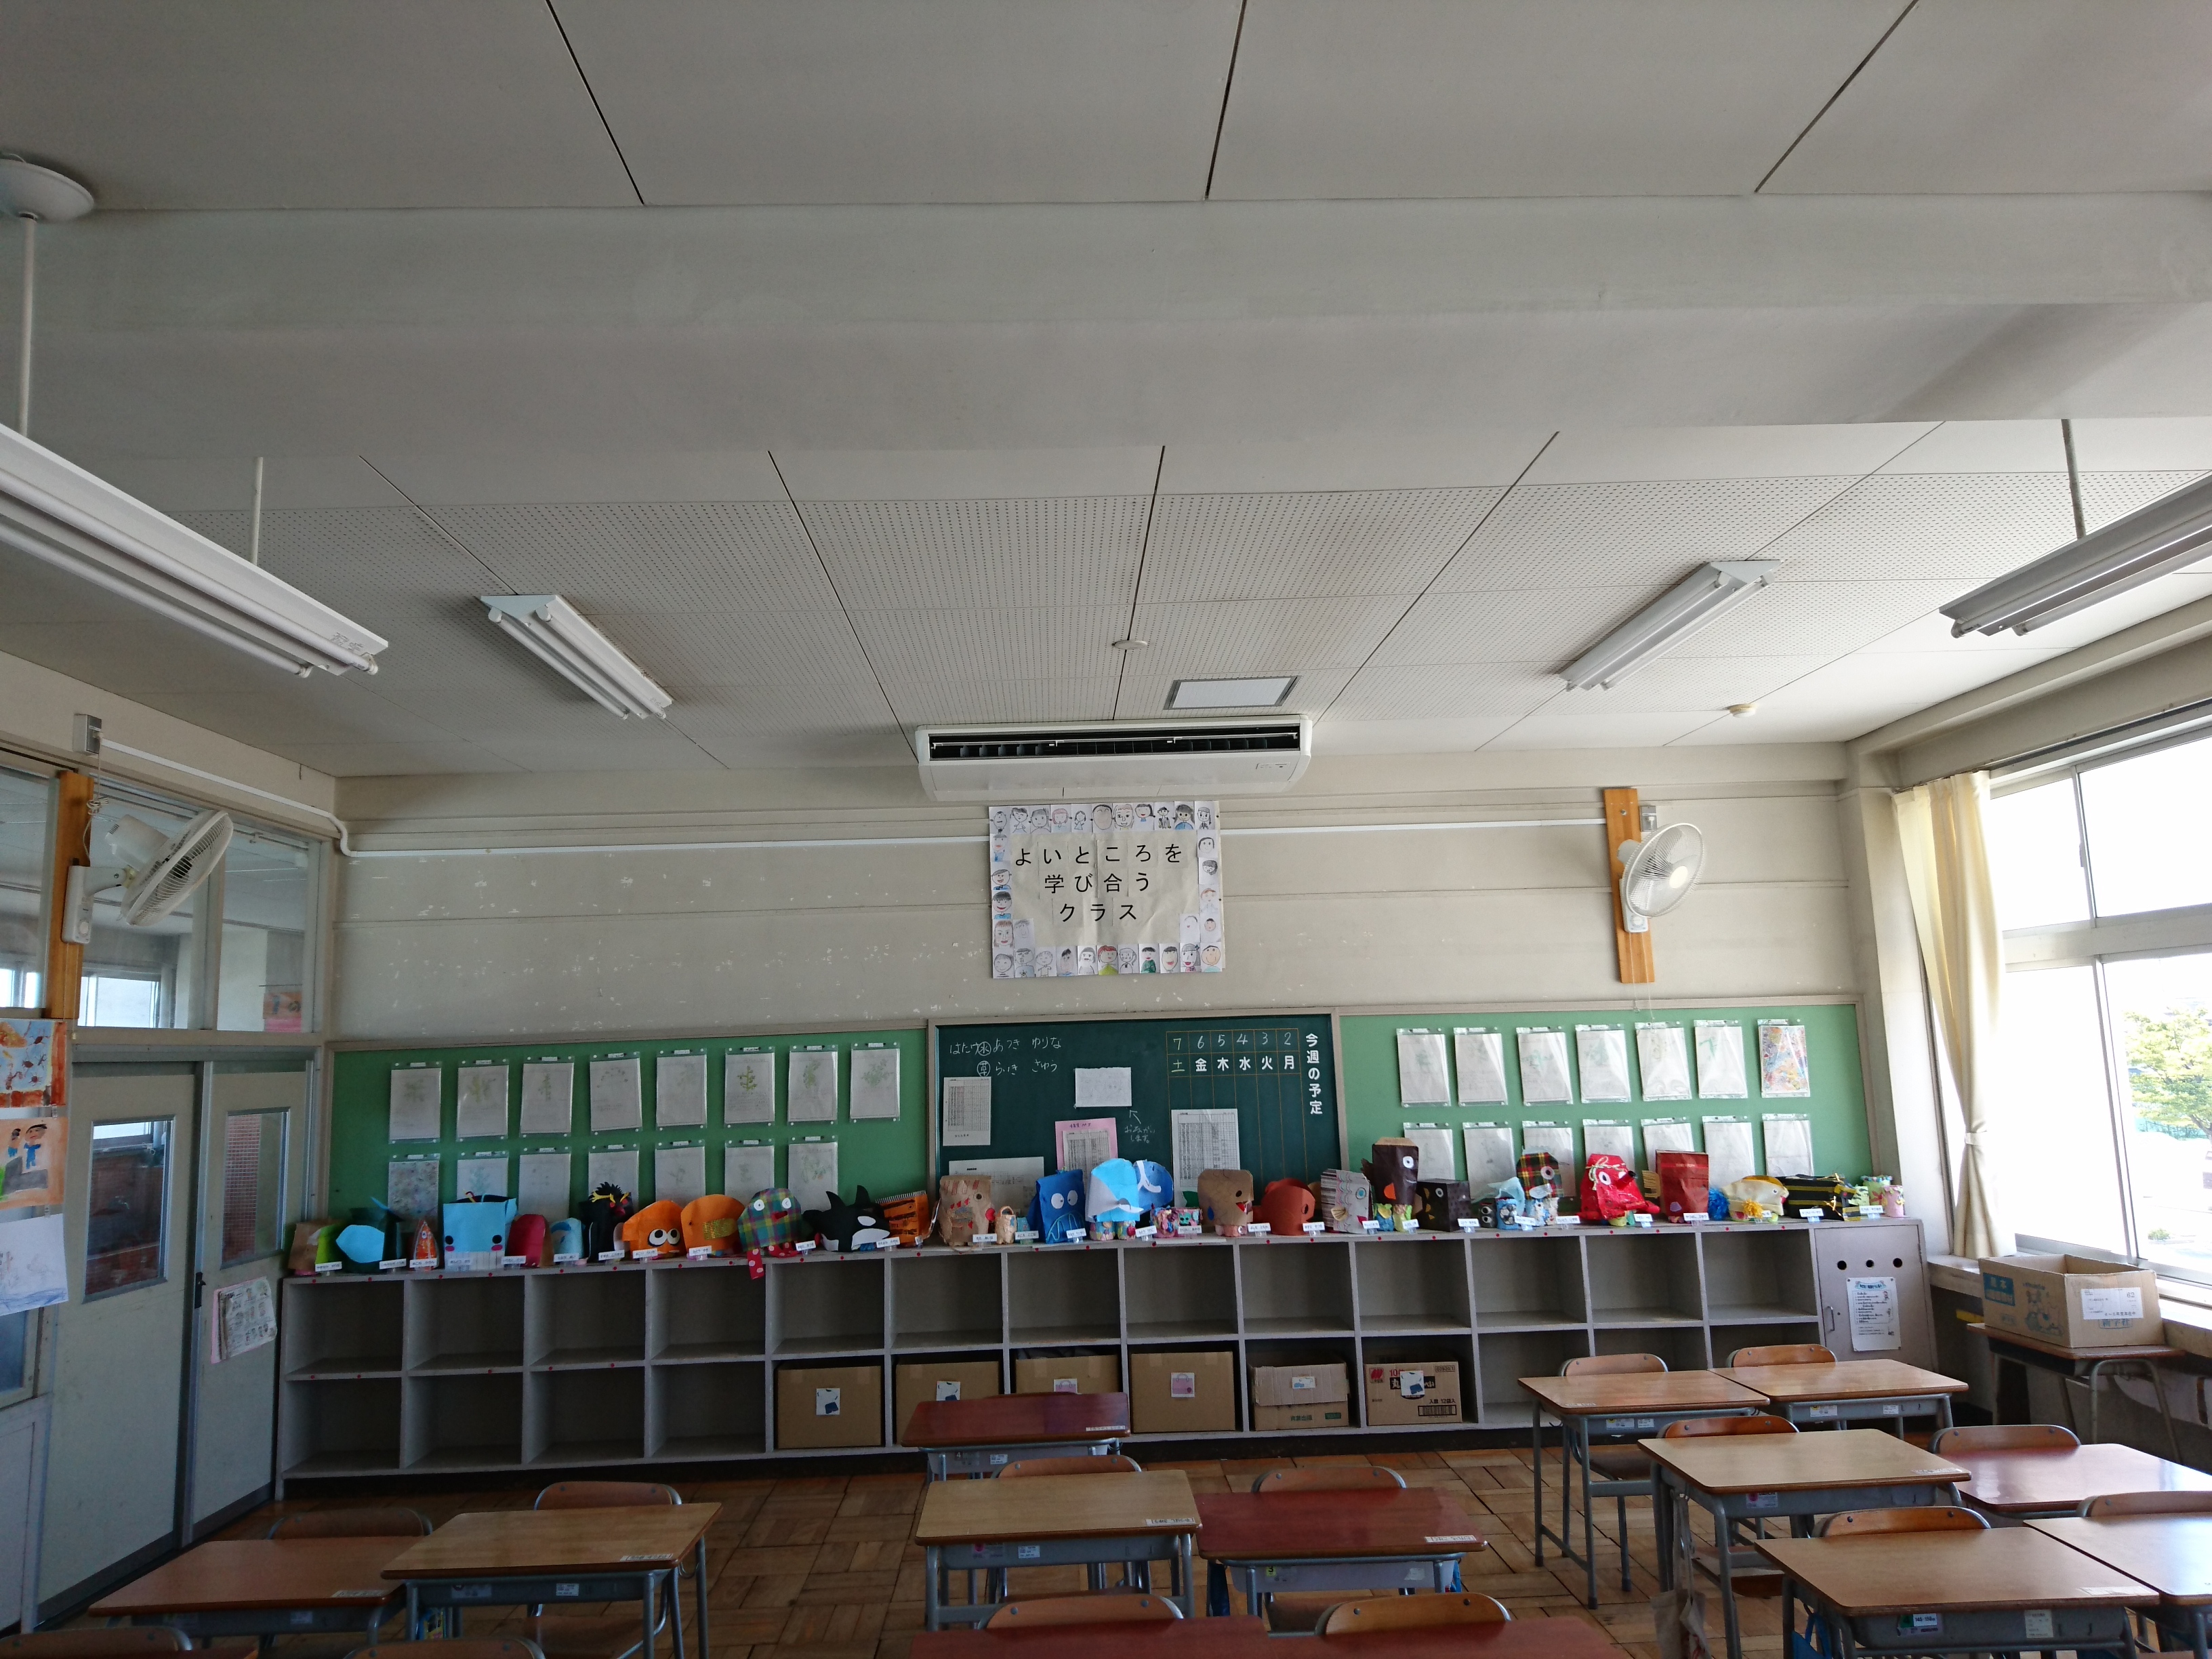 小学校でのエアコンの設置状況の写真です